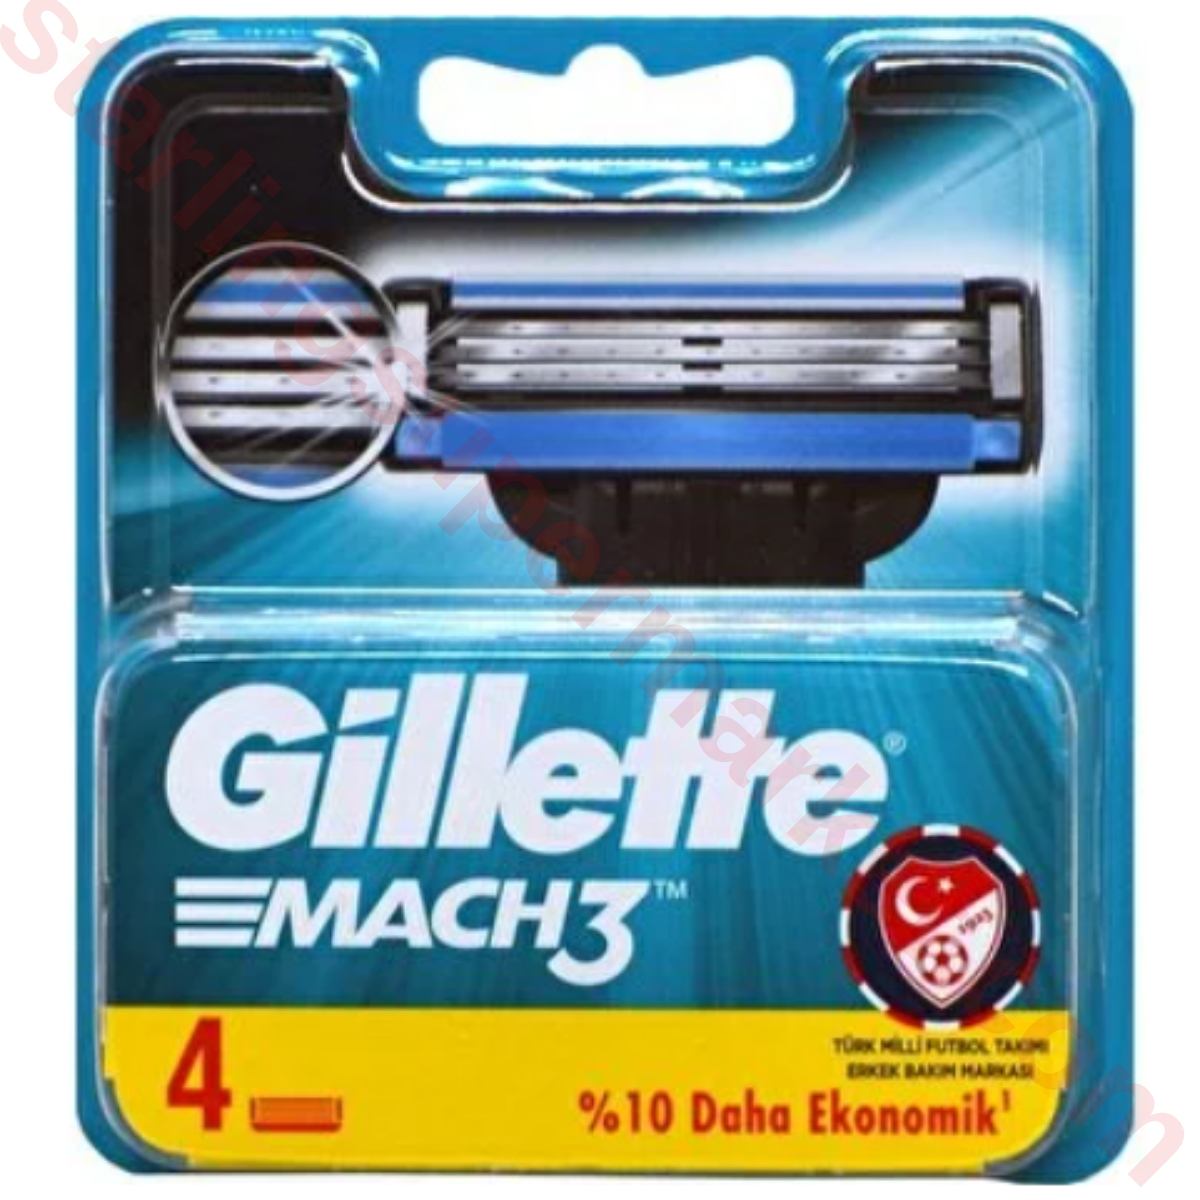 GILLETTE MACH3 SHAVING BLADE 4 PACKS